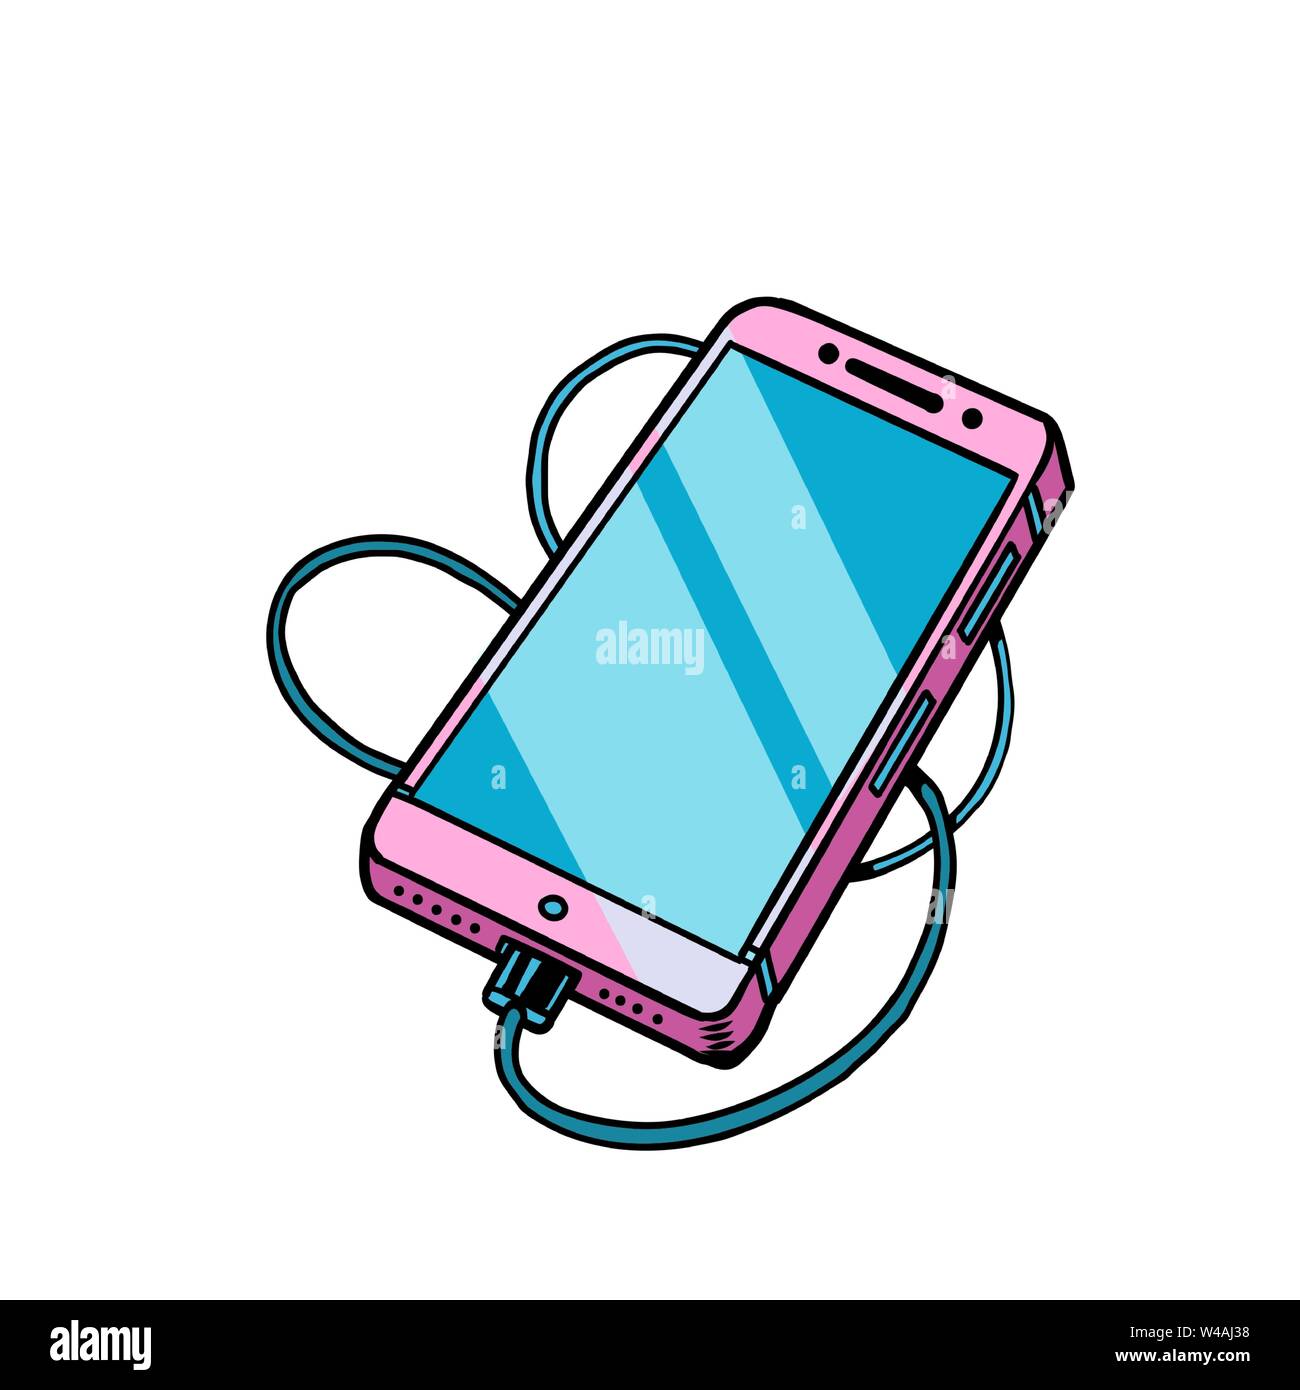 Rosa teléfono móvil smartphone gadget Ilustración del Vector